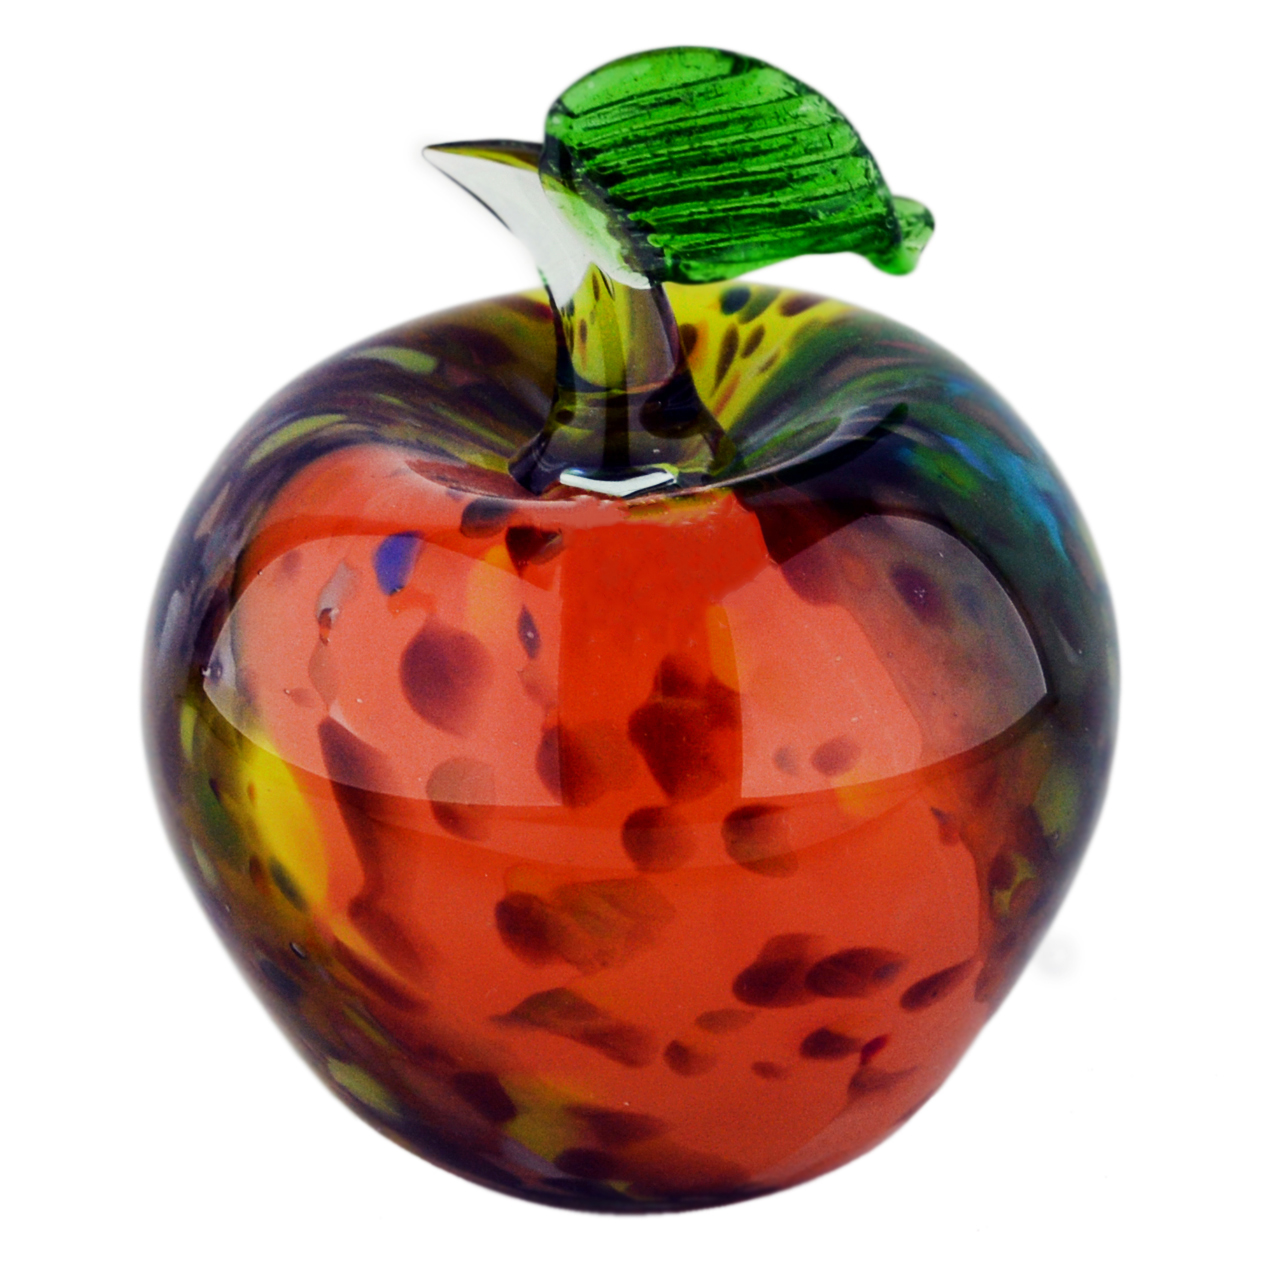 سیب شیشه ای مدل جاودانگی کد ap01